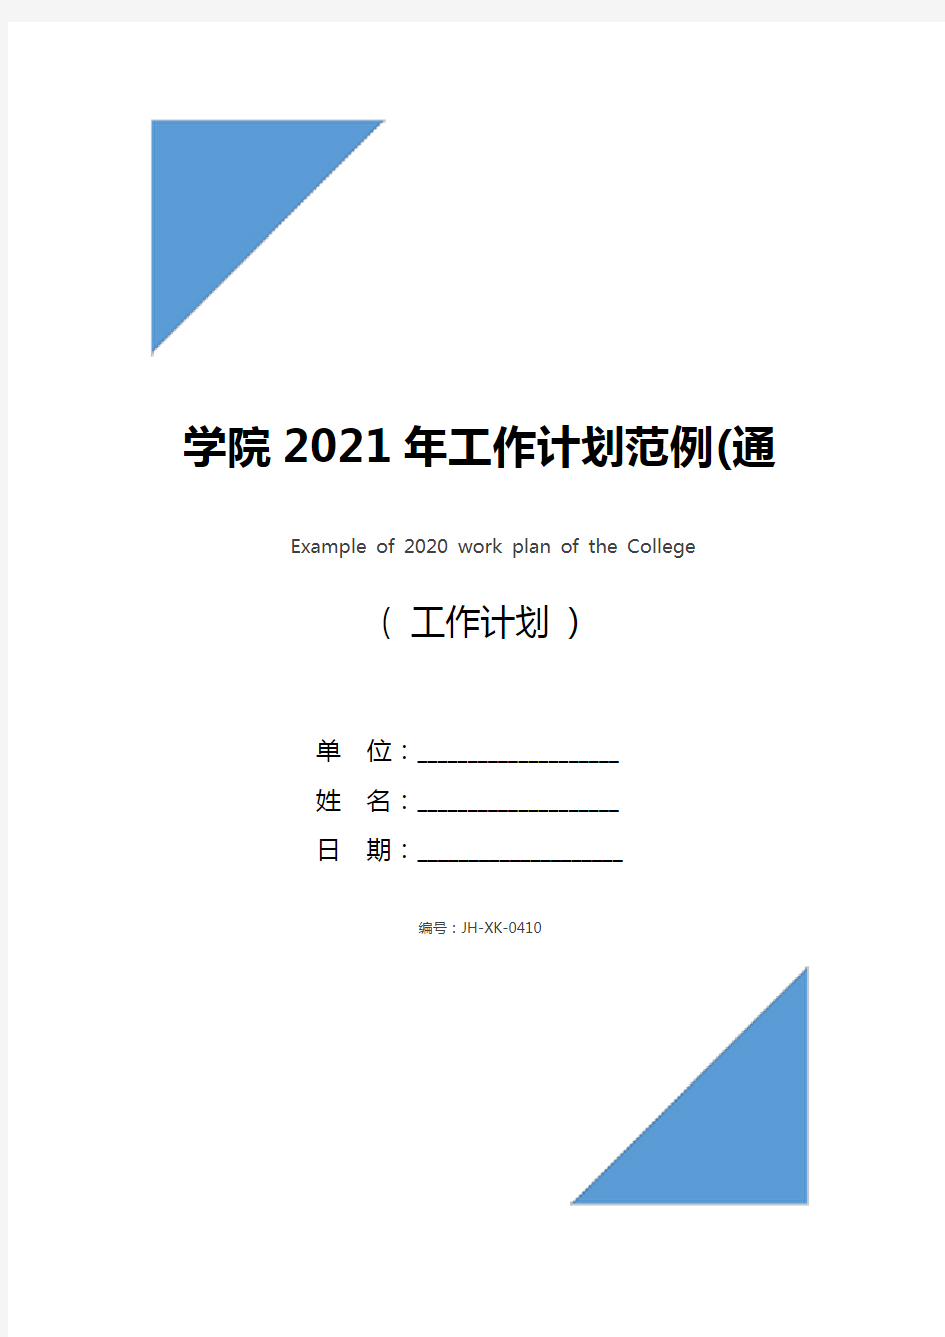 学院2021年工作计划范例(通用版)